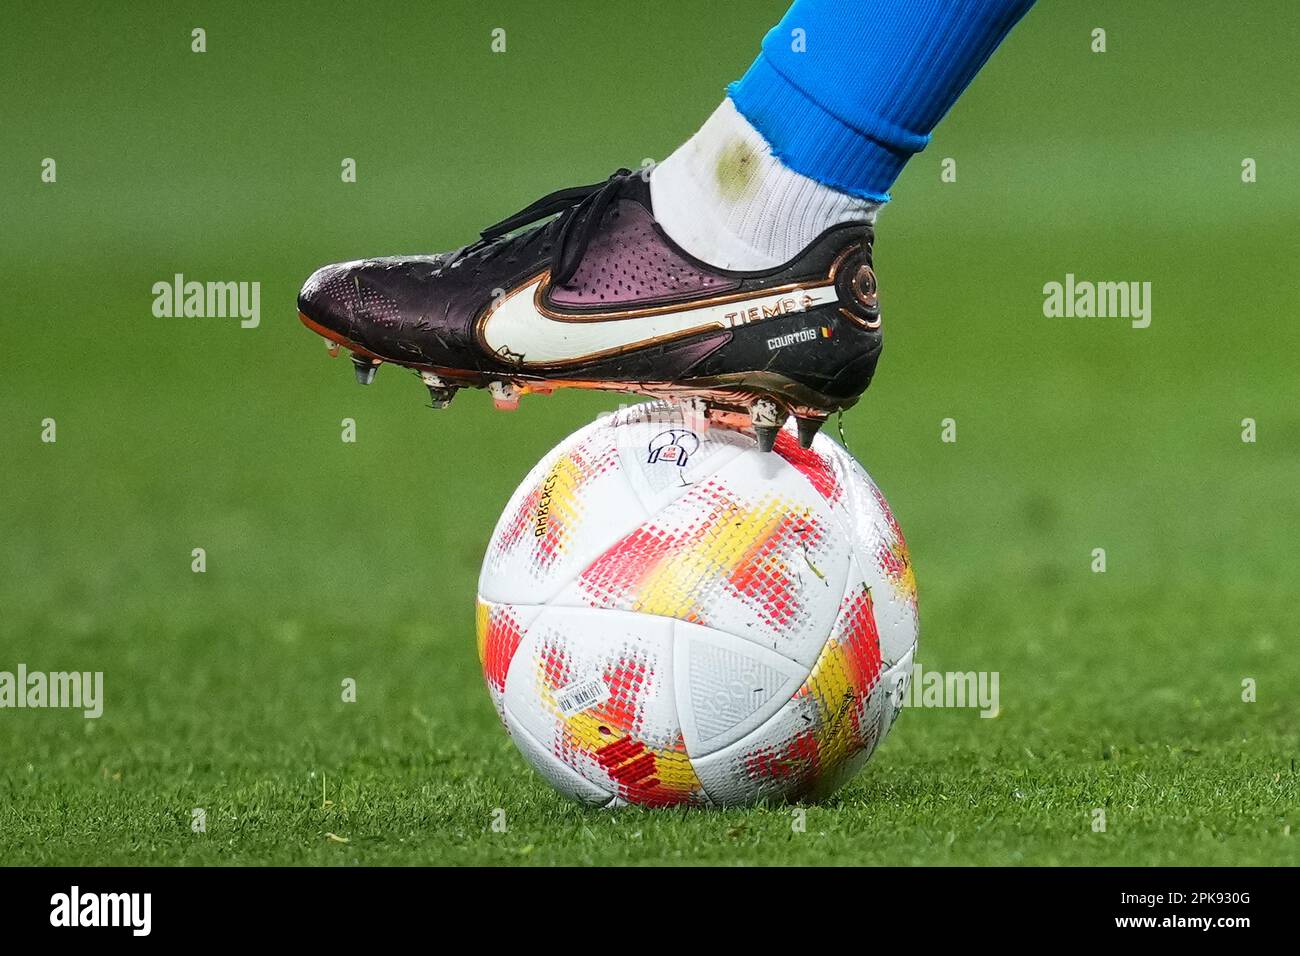 Thibaut courtois du Real Madrid Nike Tiempo Boots pendant le match de Copa  del Rey, semi-finales, deuxième jambe, entre le FC Barcelone et le Real  Madrid. Joué au stade Spotify Camp Nou